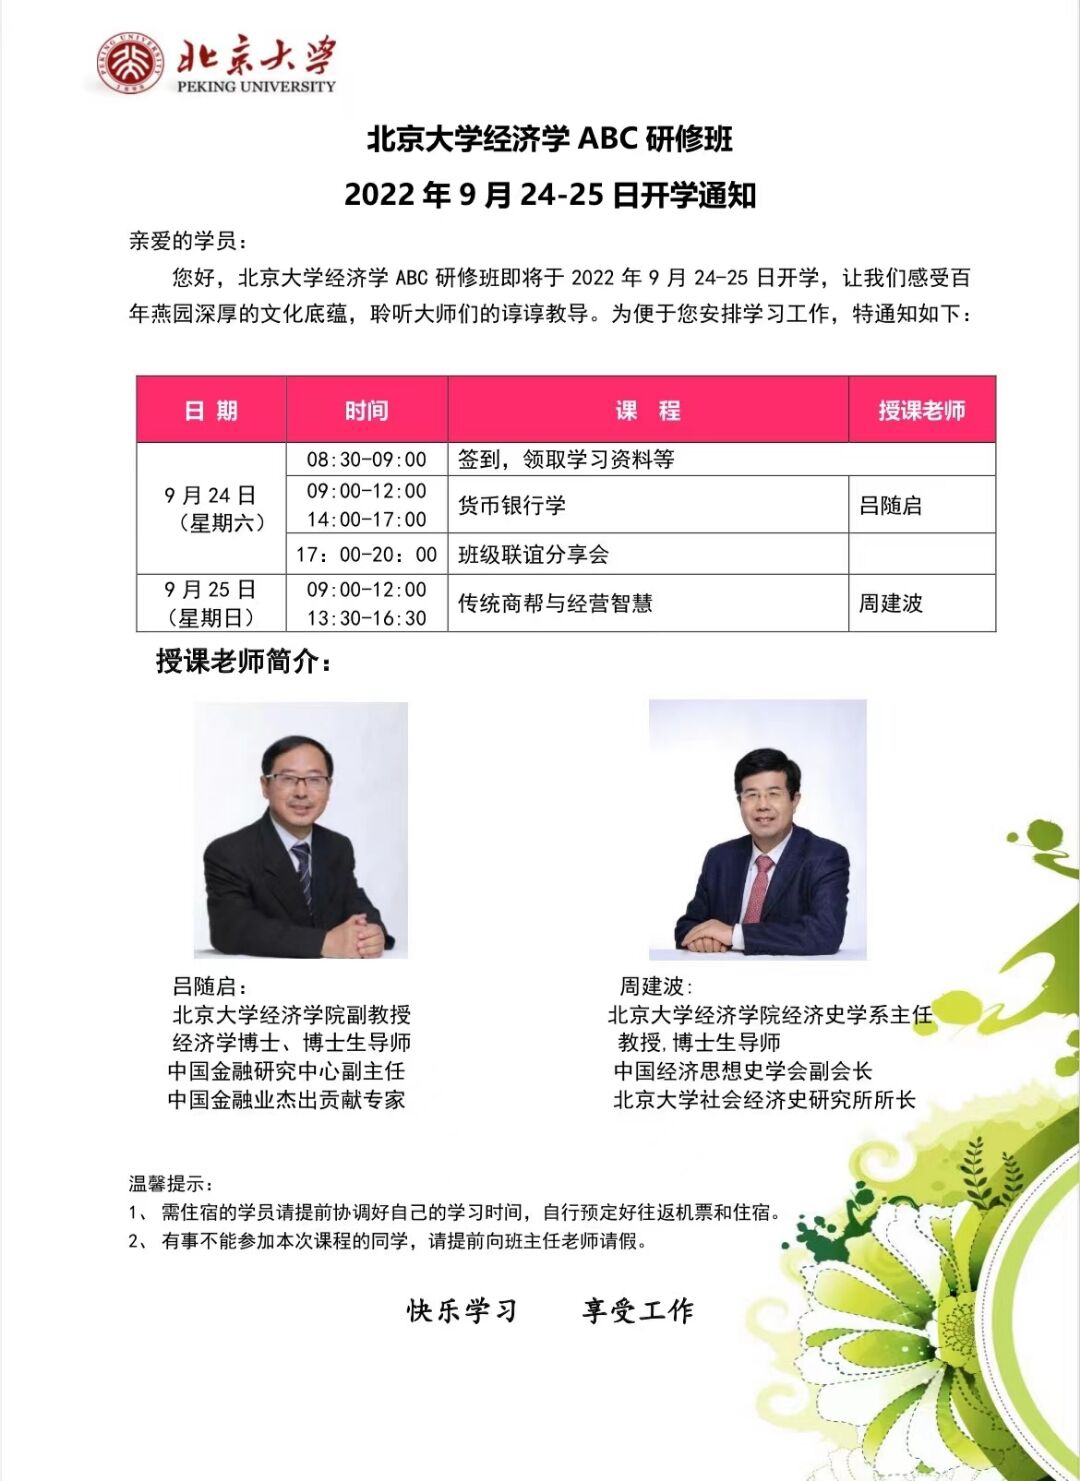 北京大学经济学ABC研修班2022年9月24-25日开课通知